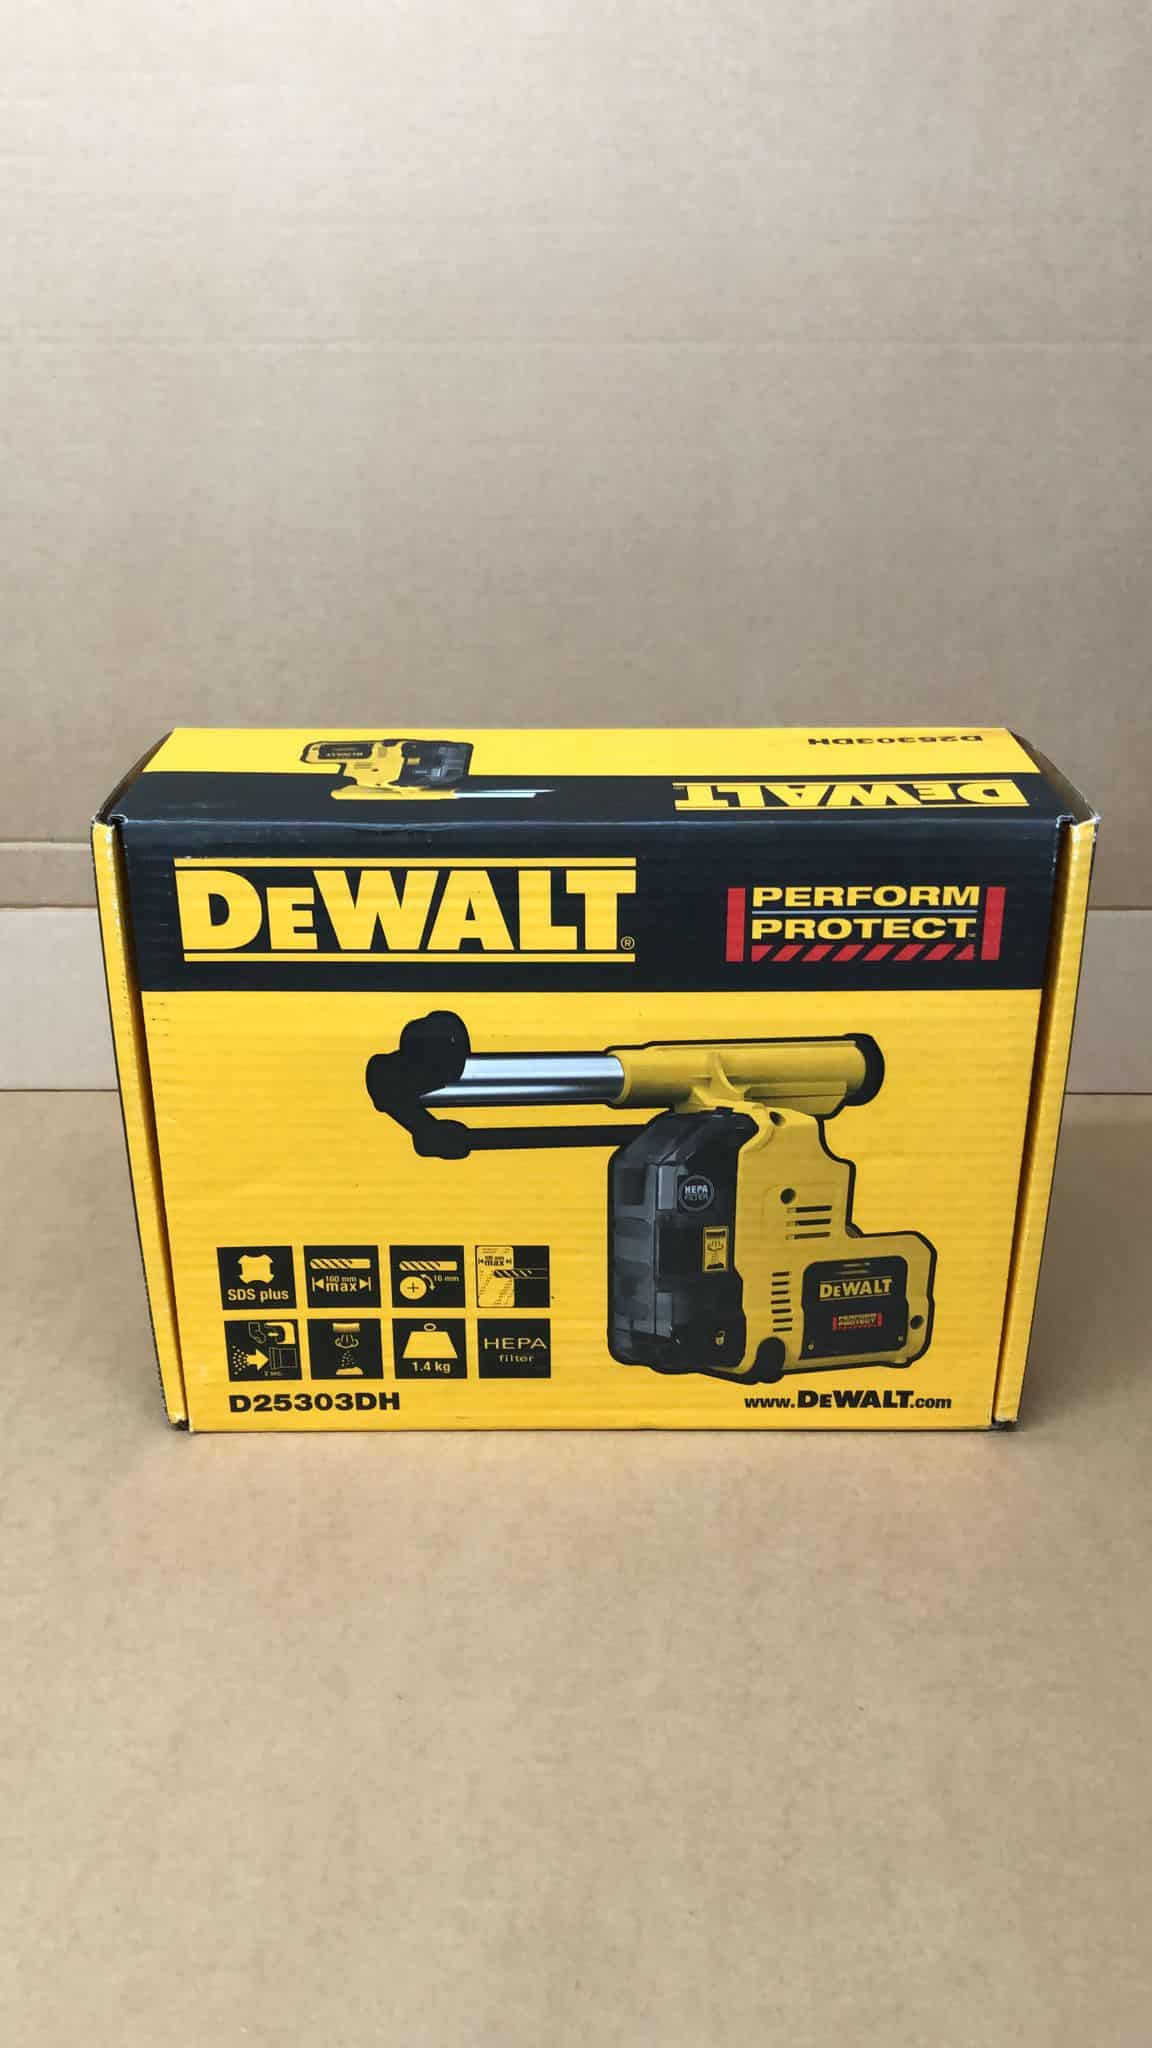 DEWALT D25303Dh Cordless Dust Extraction System 18V Bare Unit DEWD25303DH 7389